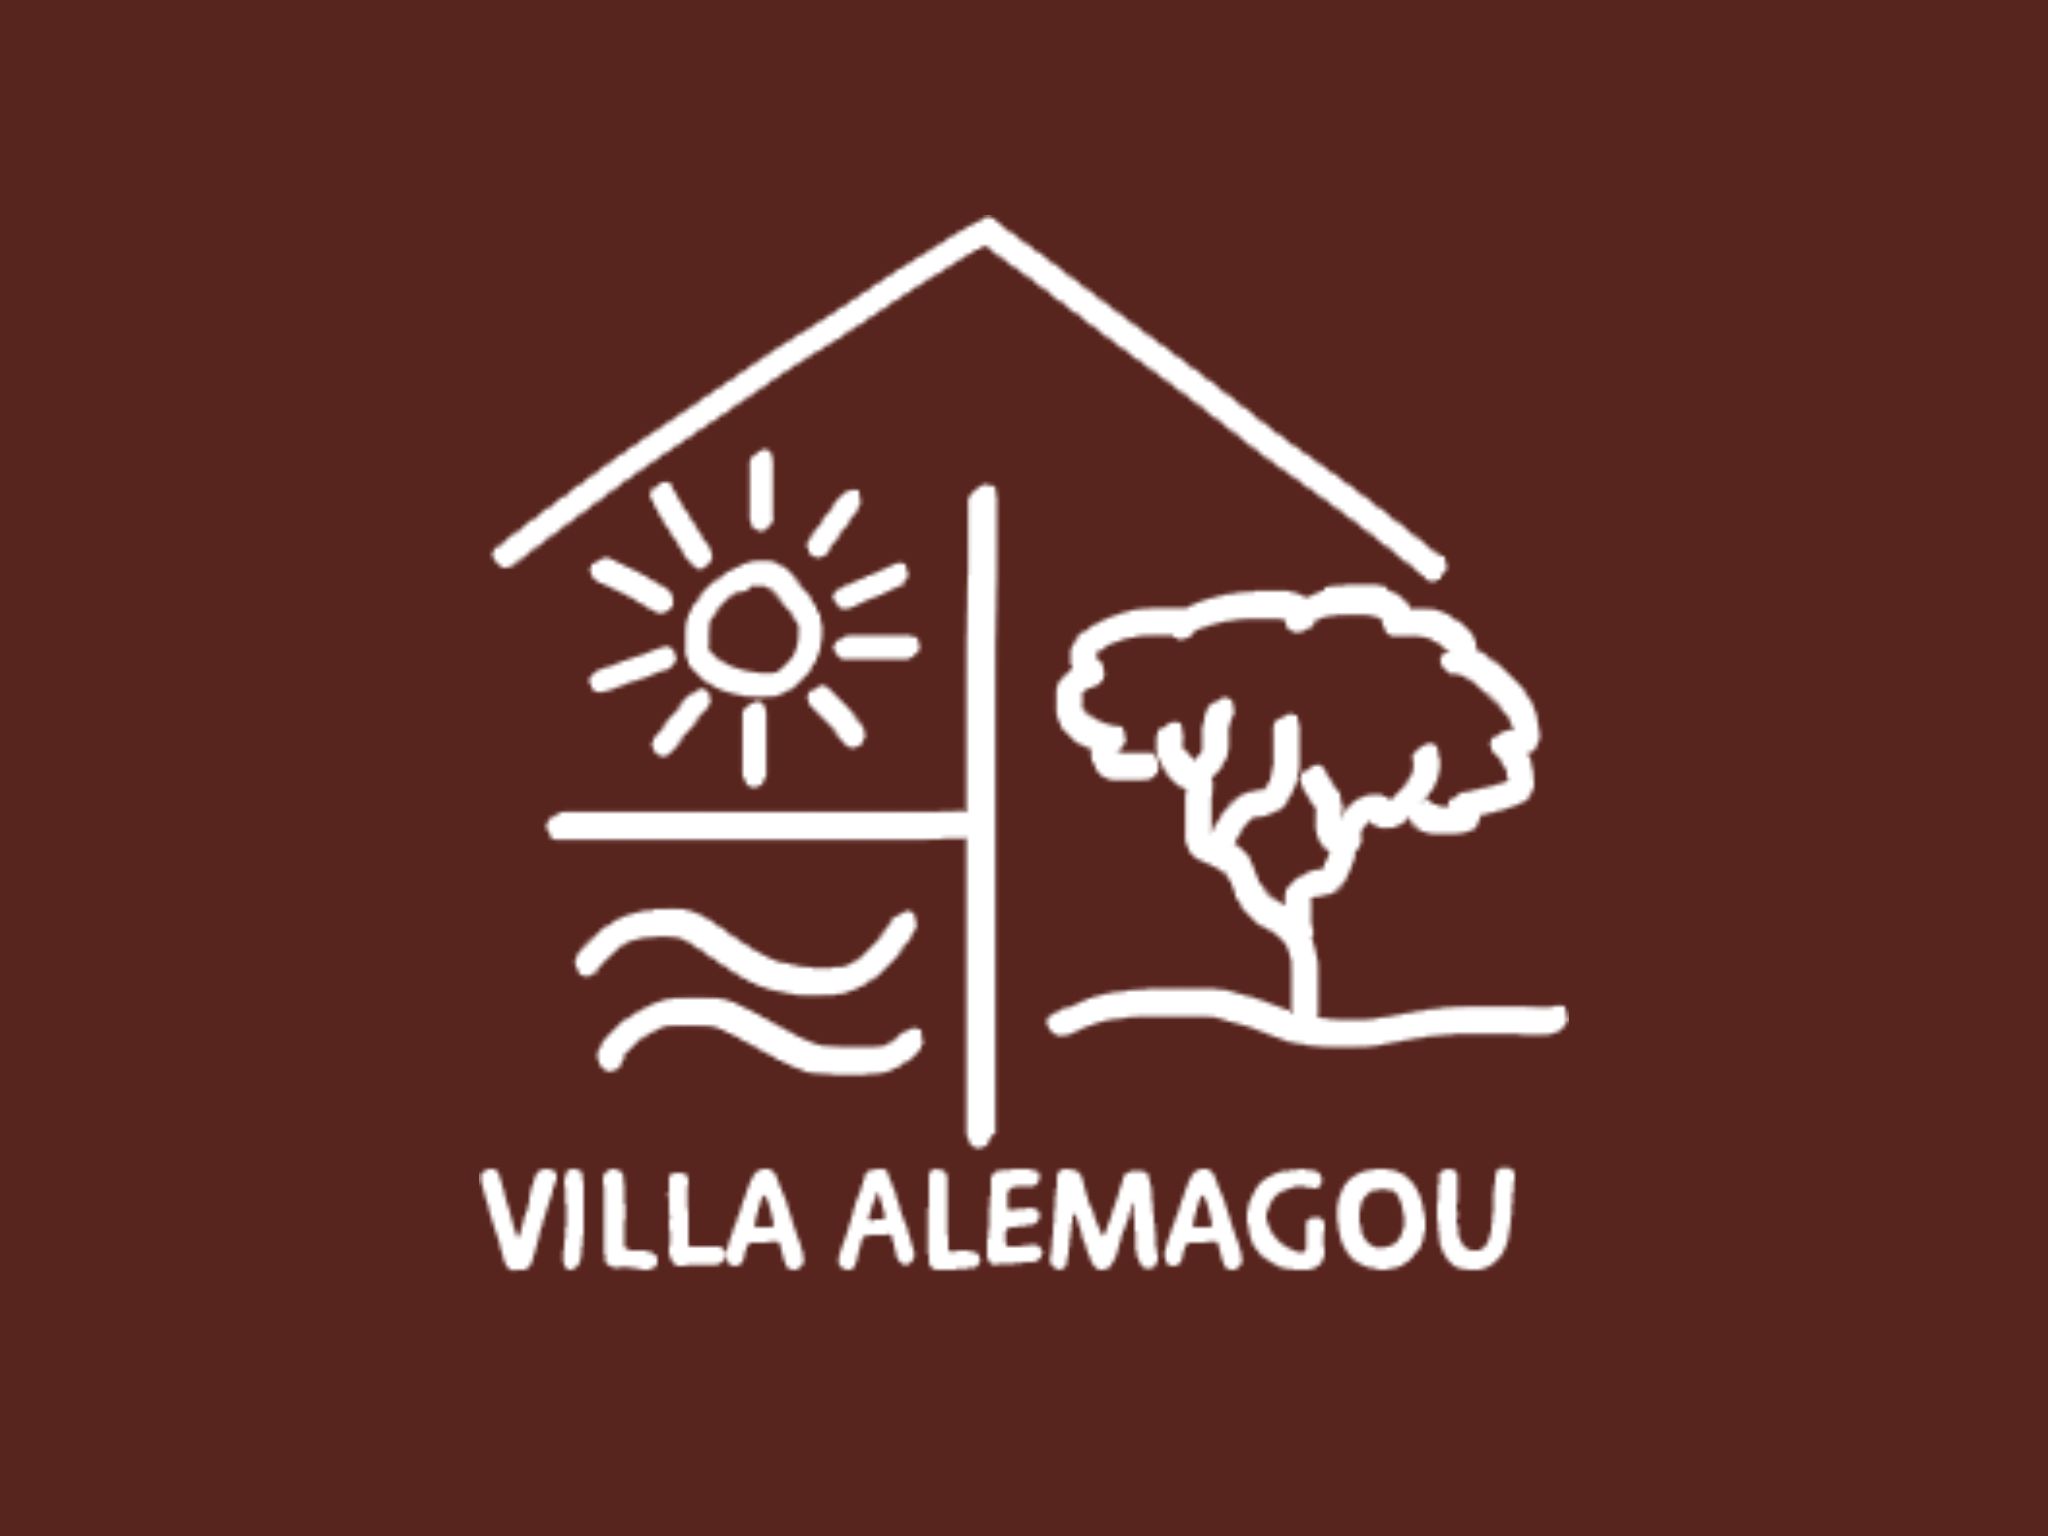  Logo Villa Alemagou 4